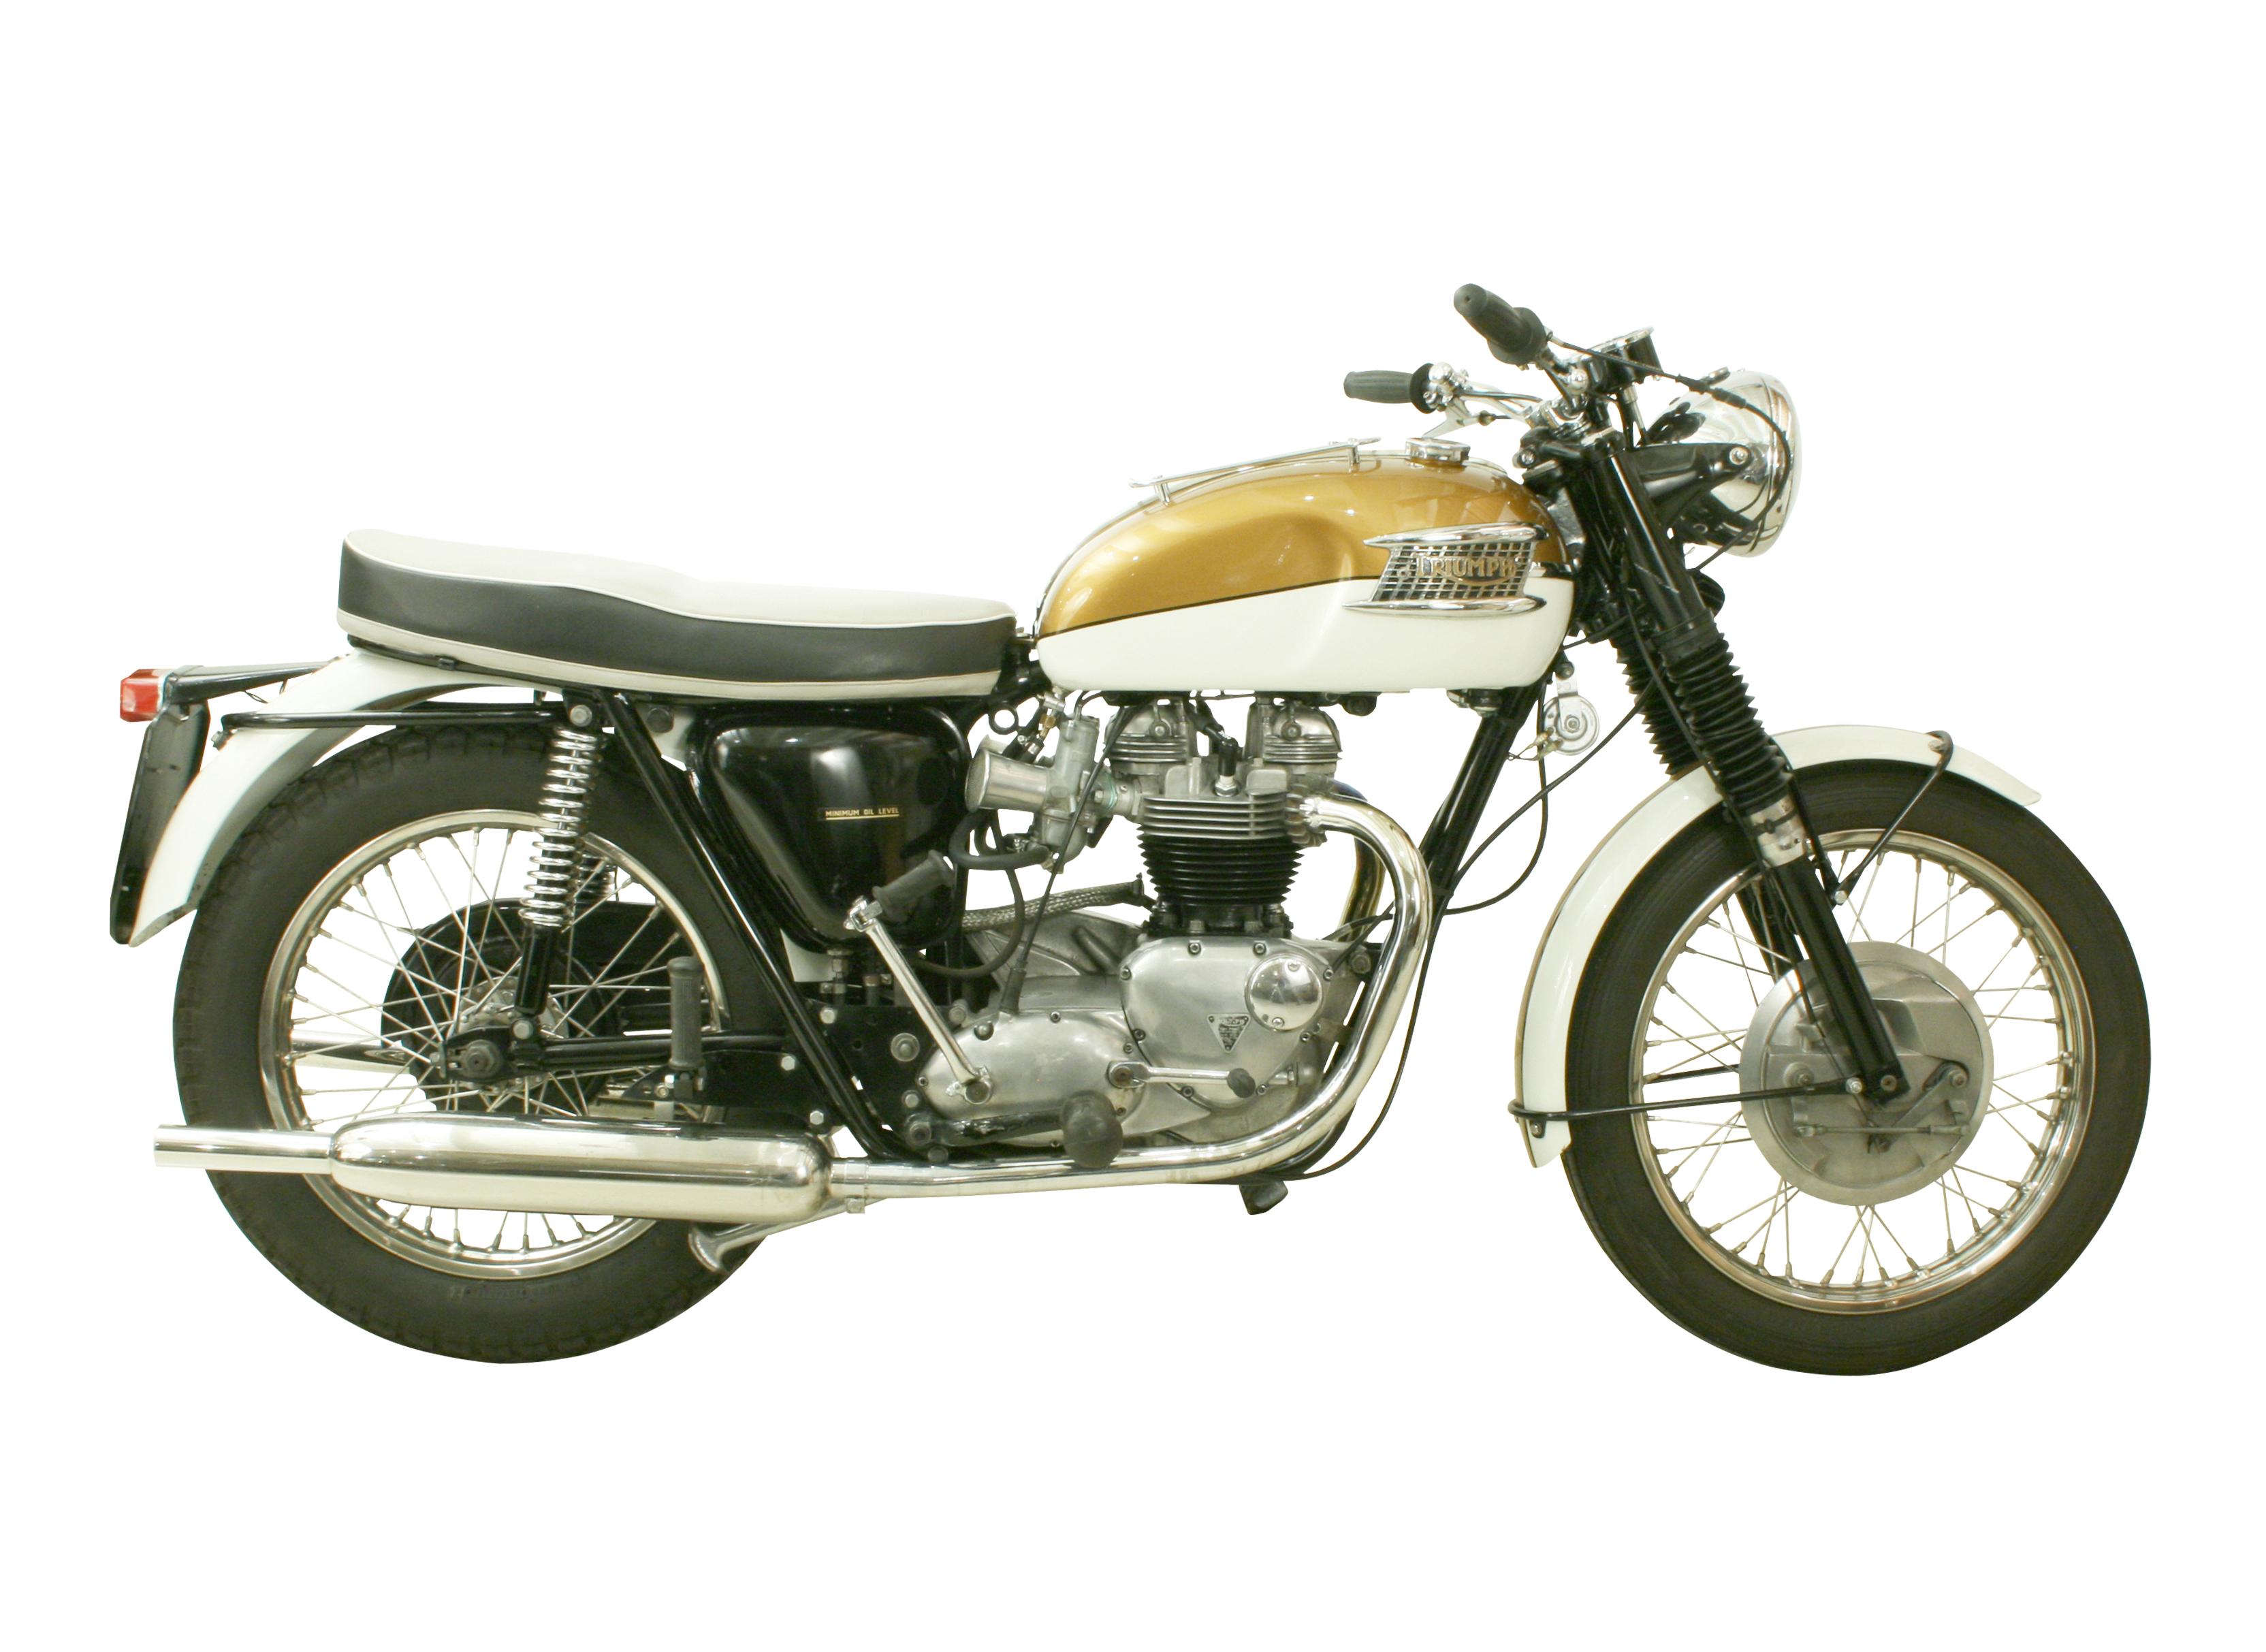 British Triumph Bonneville Motorcycle